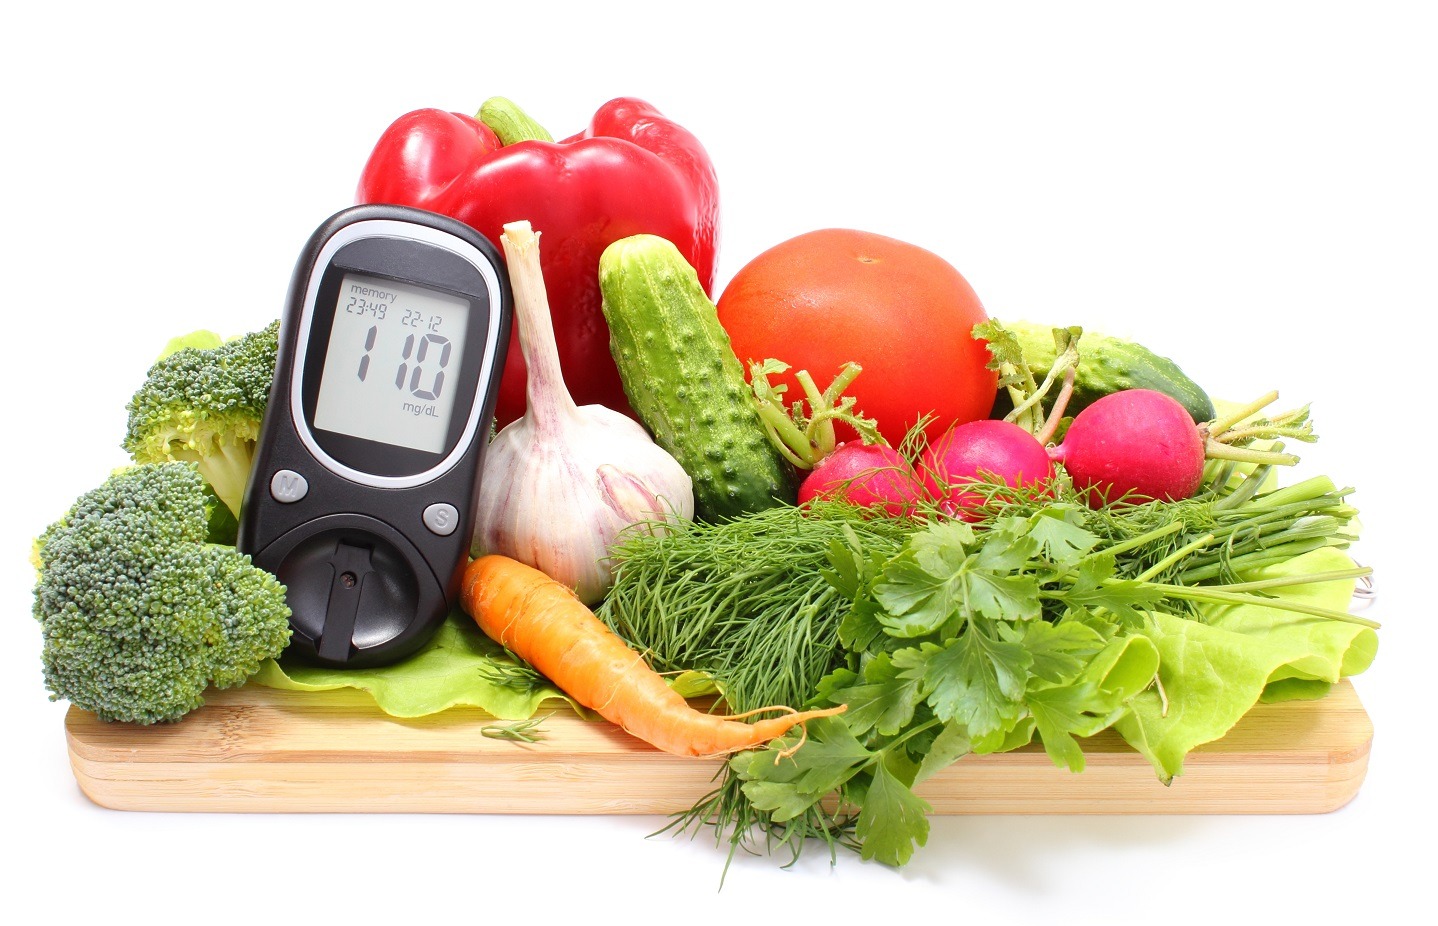 Alimentația și diabetul: 3 priorități pentru reducerea riscului